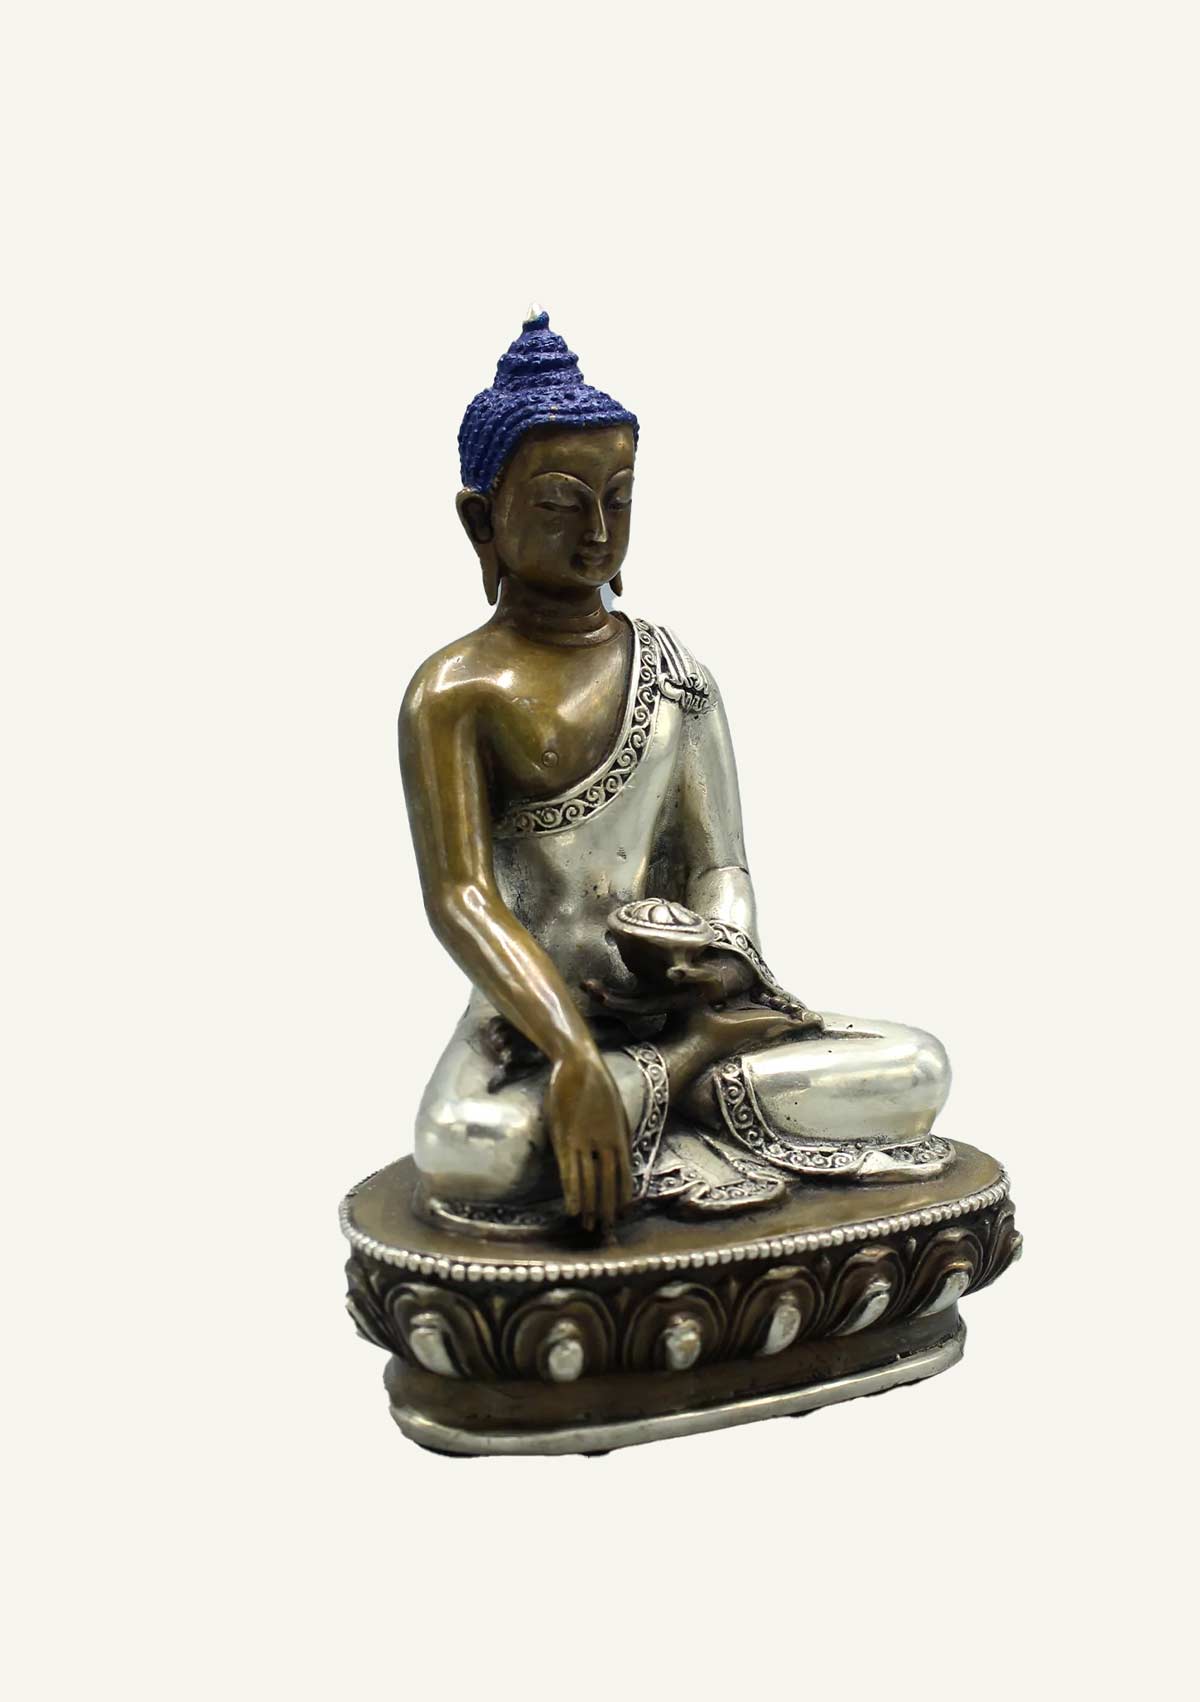 Shakyamuni Buddha Statue with Silver Robe